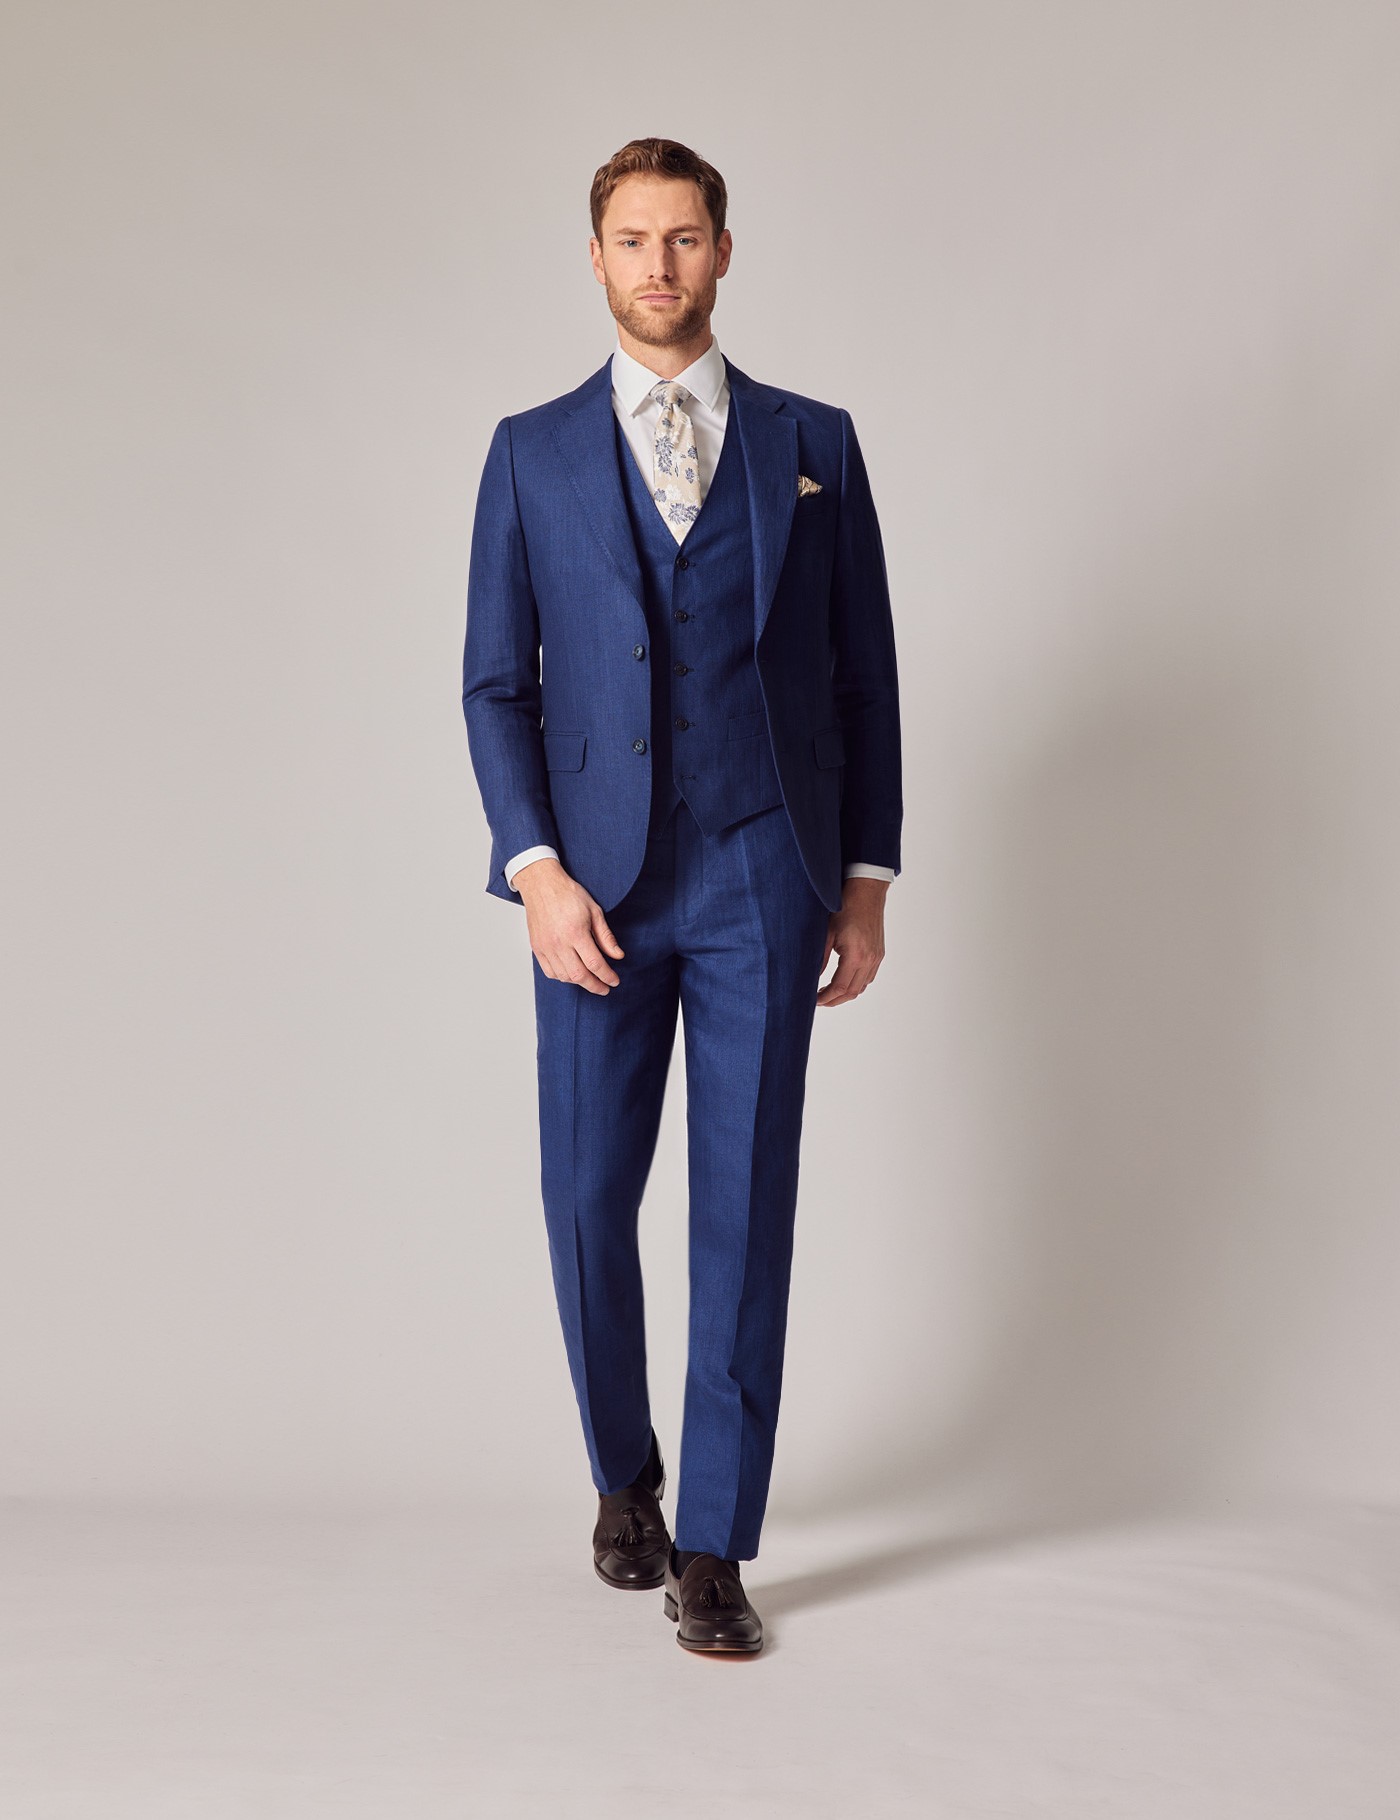 Italian Loose-Weave Spring Tweed Suiting - Blue/Royal/Tan/Ivory